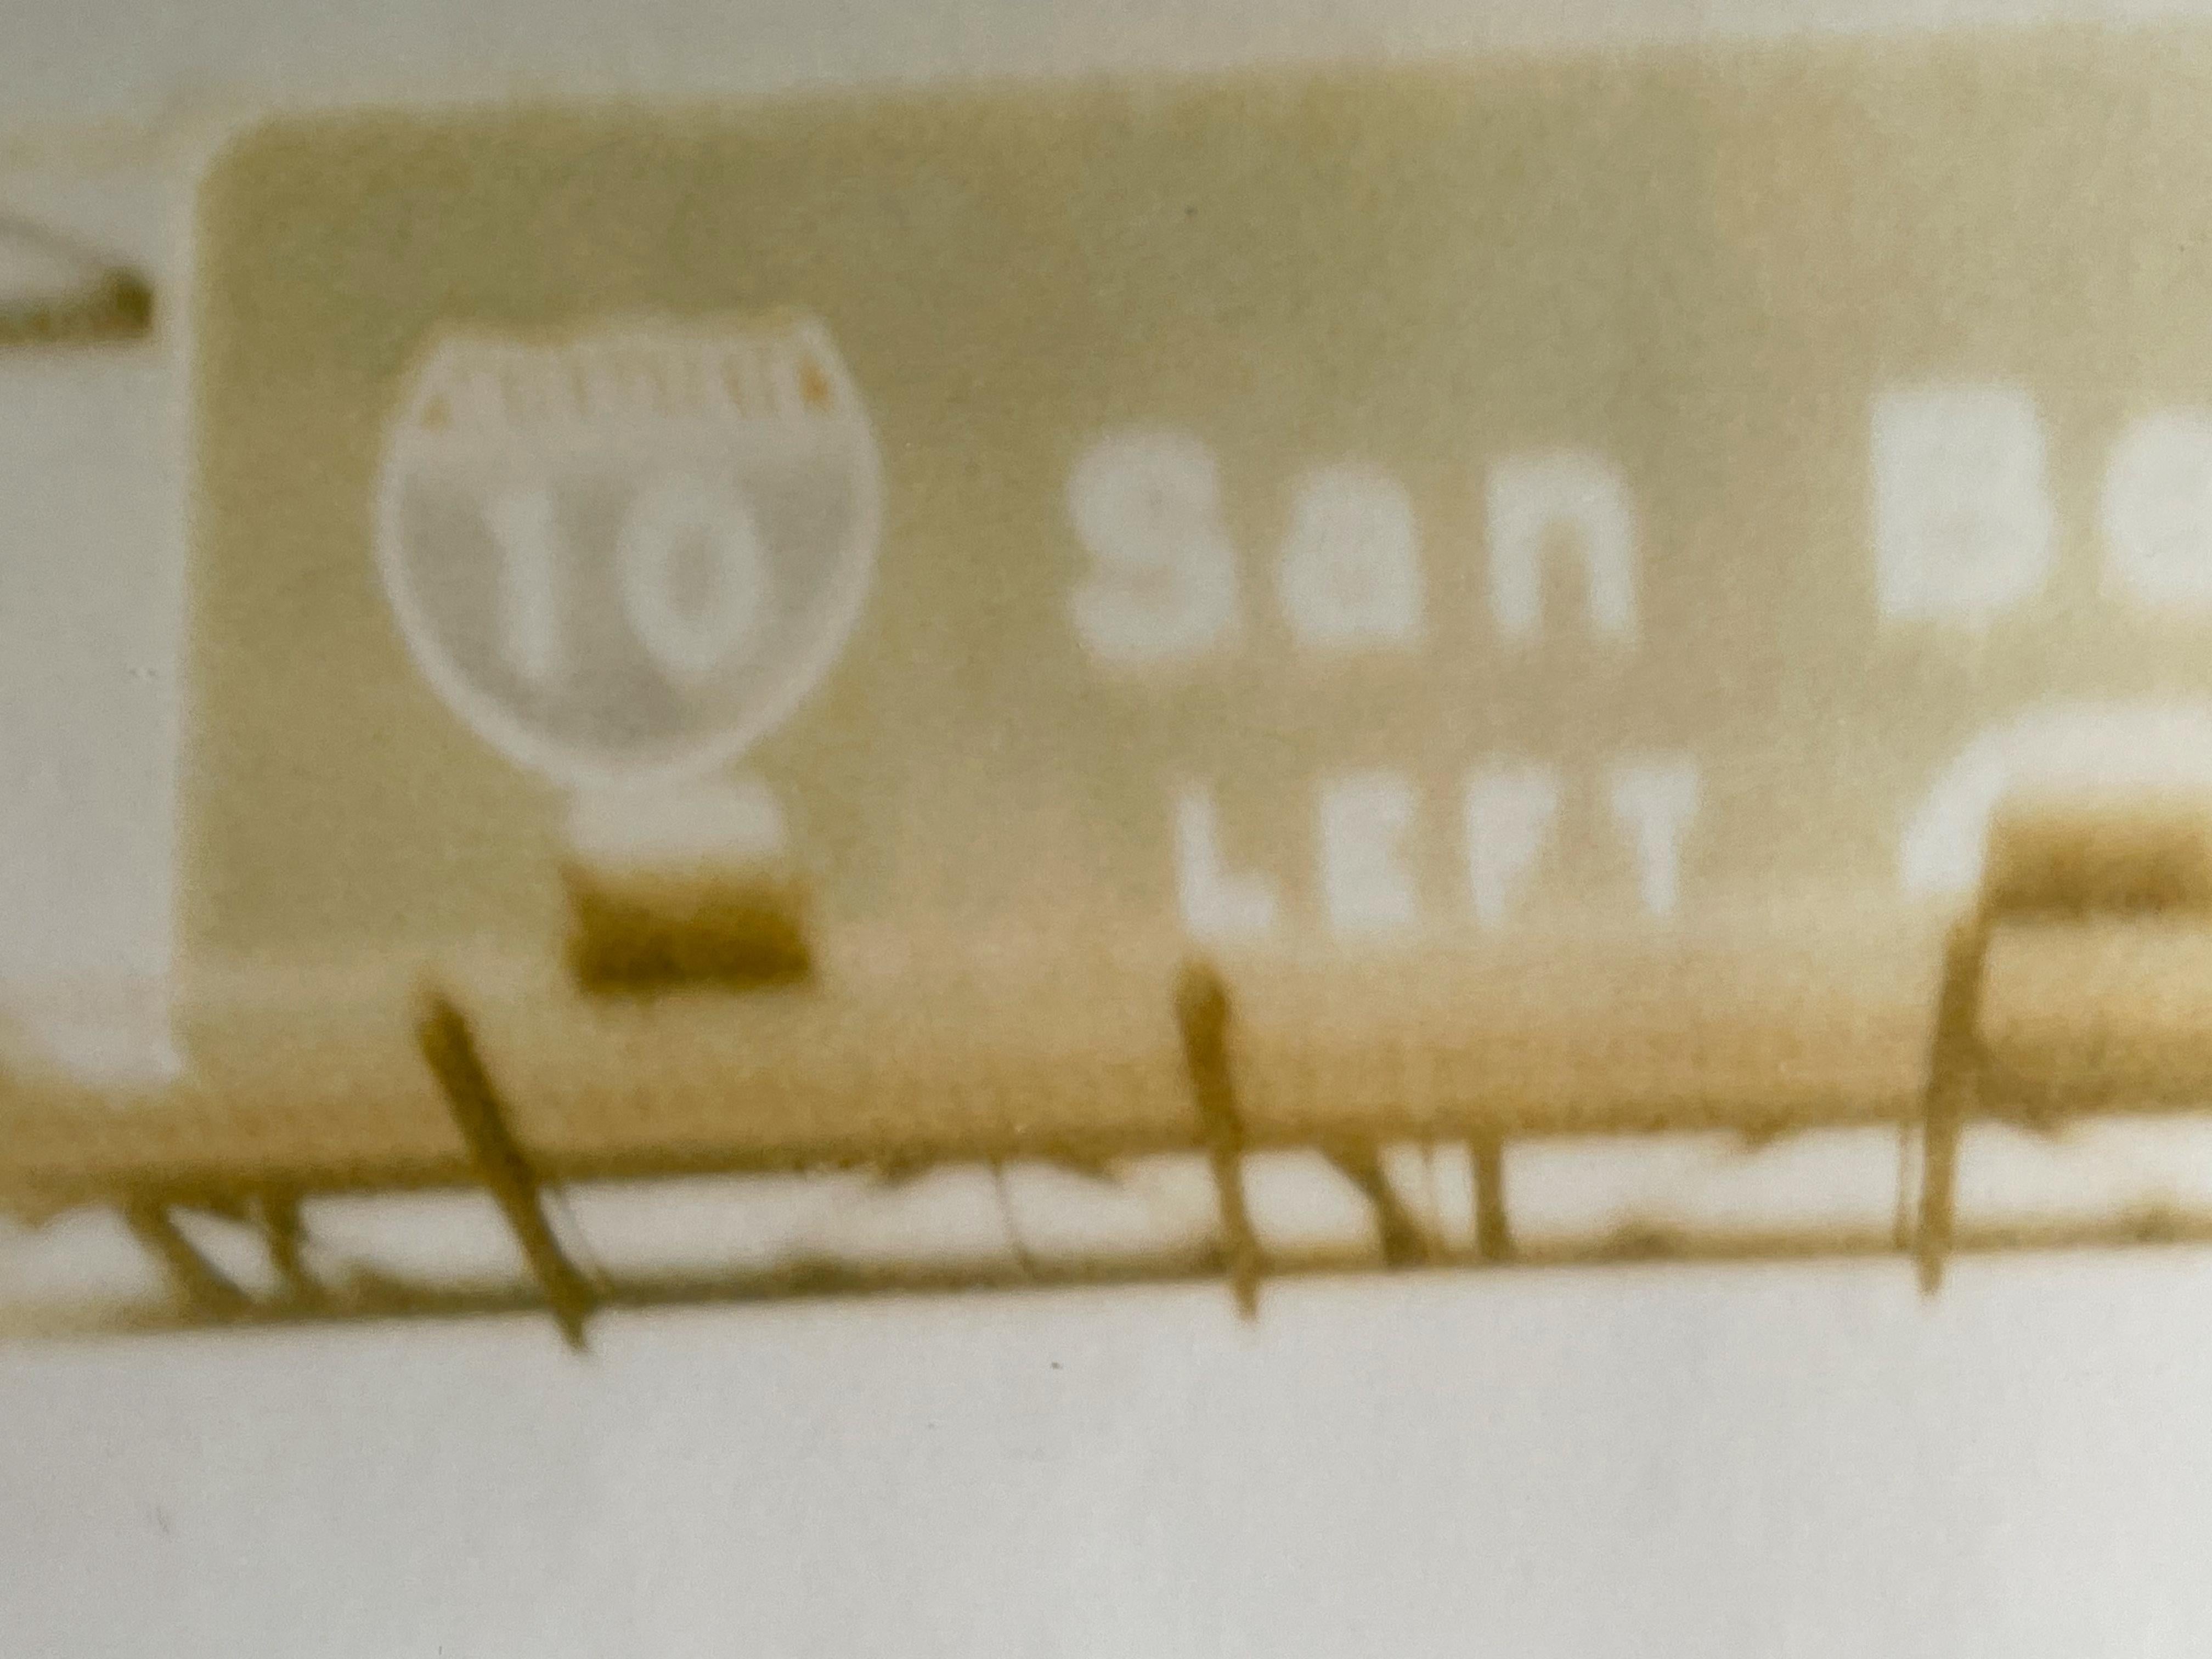 San Bernadino (Route du désert) - 1999

44x59cm, 
Édition de 10 exemplaires plus 2 épreuves d'artiste. 
A.I.C.C., imprimé à la main par l'artiste, d'après le polaroïd original. 
Signé au verso avec certificat. 
Inventaire Artistics #228. 
Non monté.